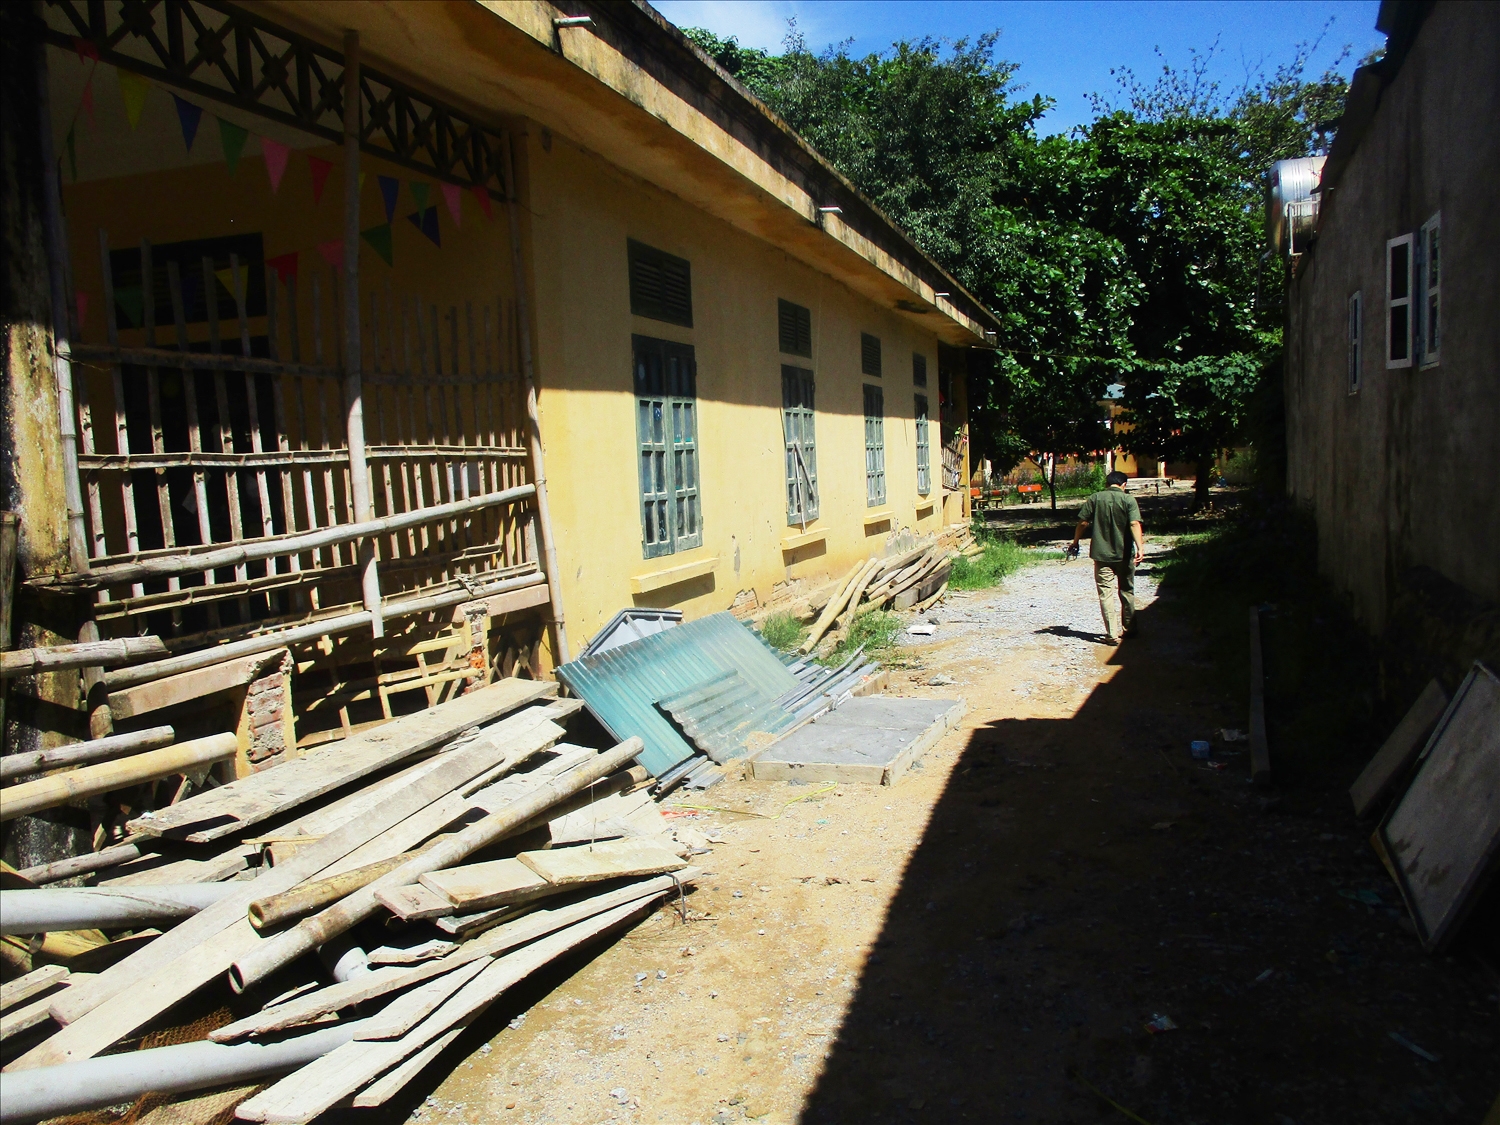 Phòng học bị xuống cấp nhưng chưa được sửa chữa vì thiếu kinh phí là tình trạng chung của nhiều cơ sở giáo dục tại các địa phương miền núi tỉnh Thanh Hóa